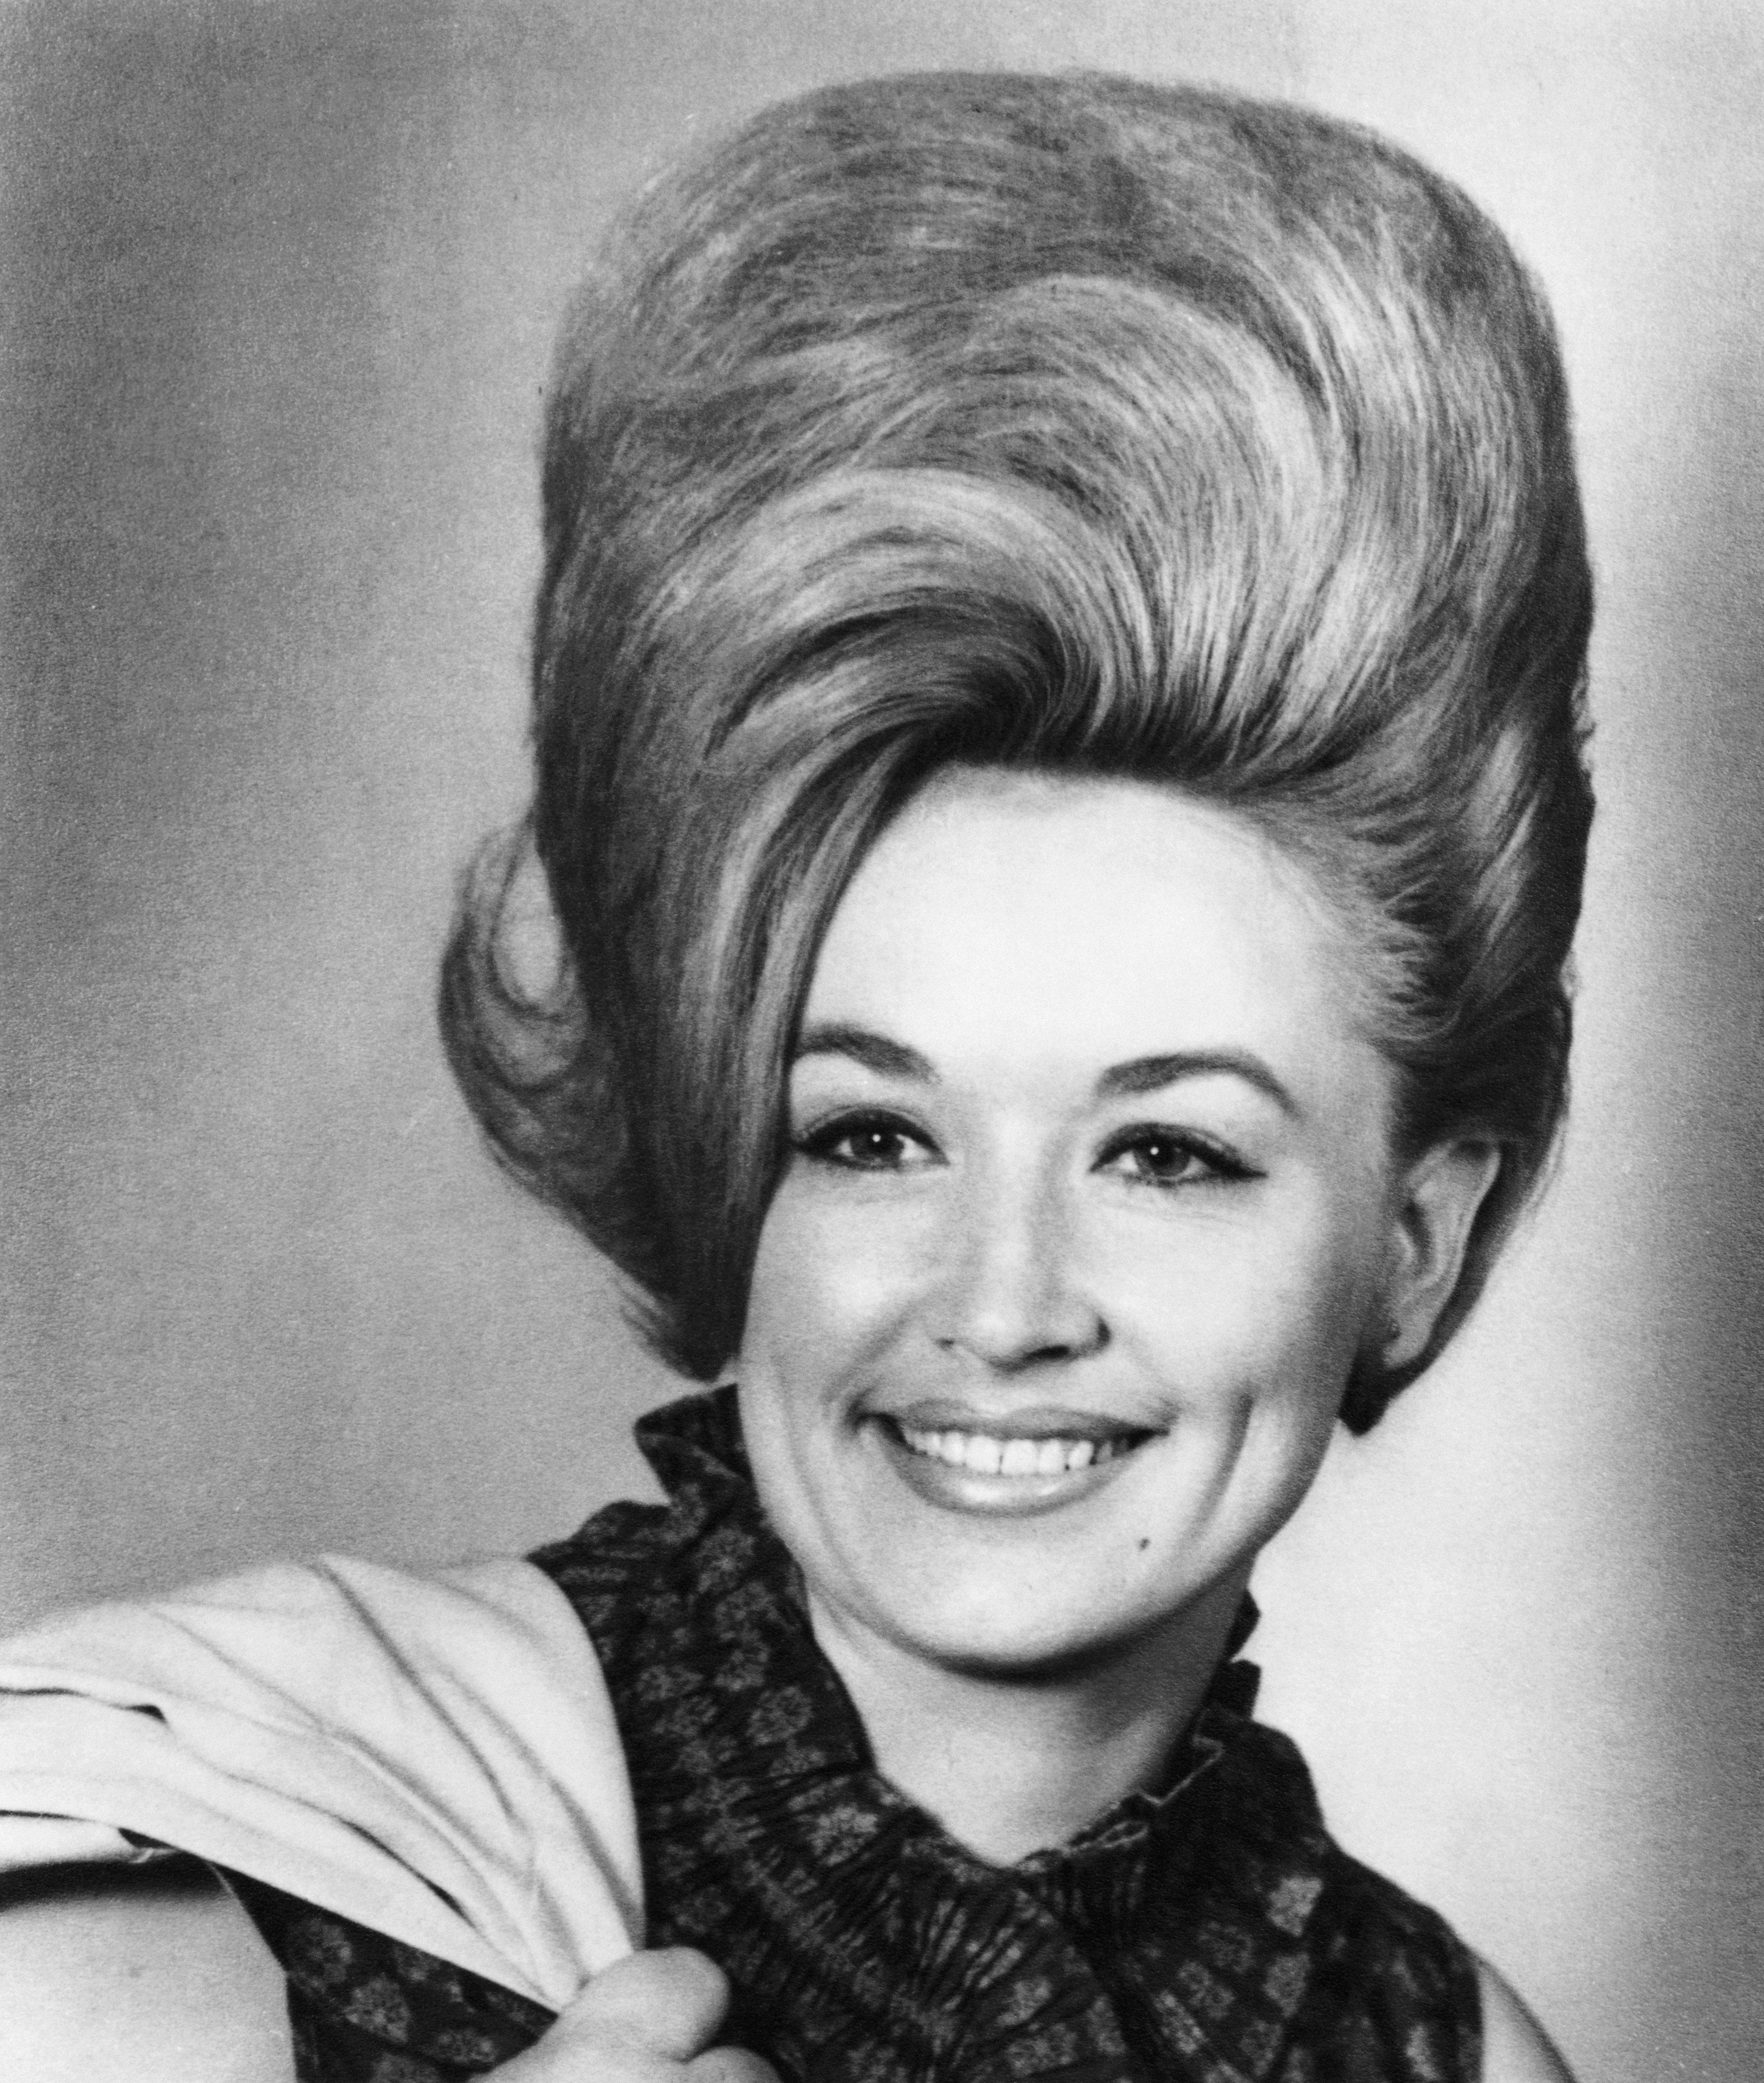 La cantante de country Dolly Parton posa para un retrato en 1965 en Nashville, Tennessee. | Foto: Getty Images